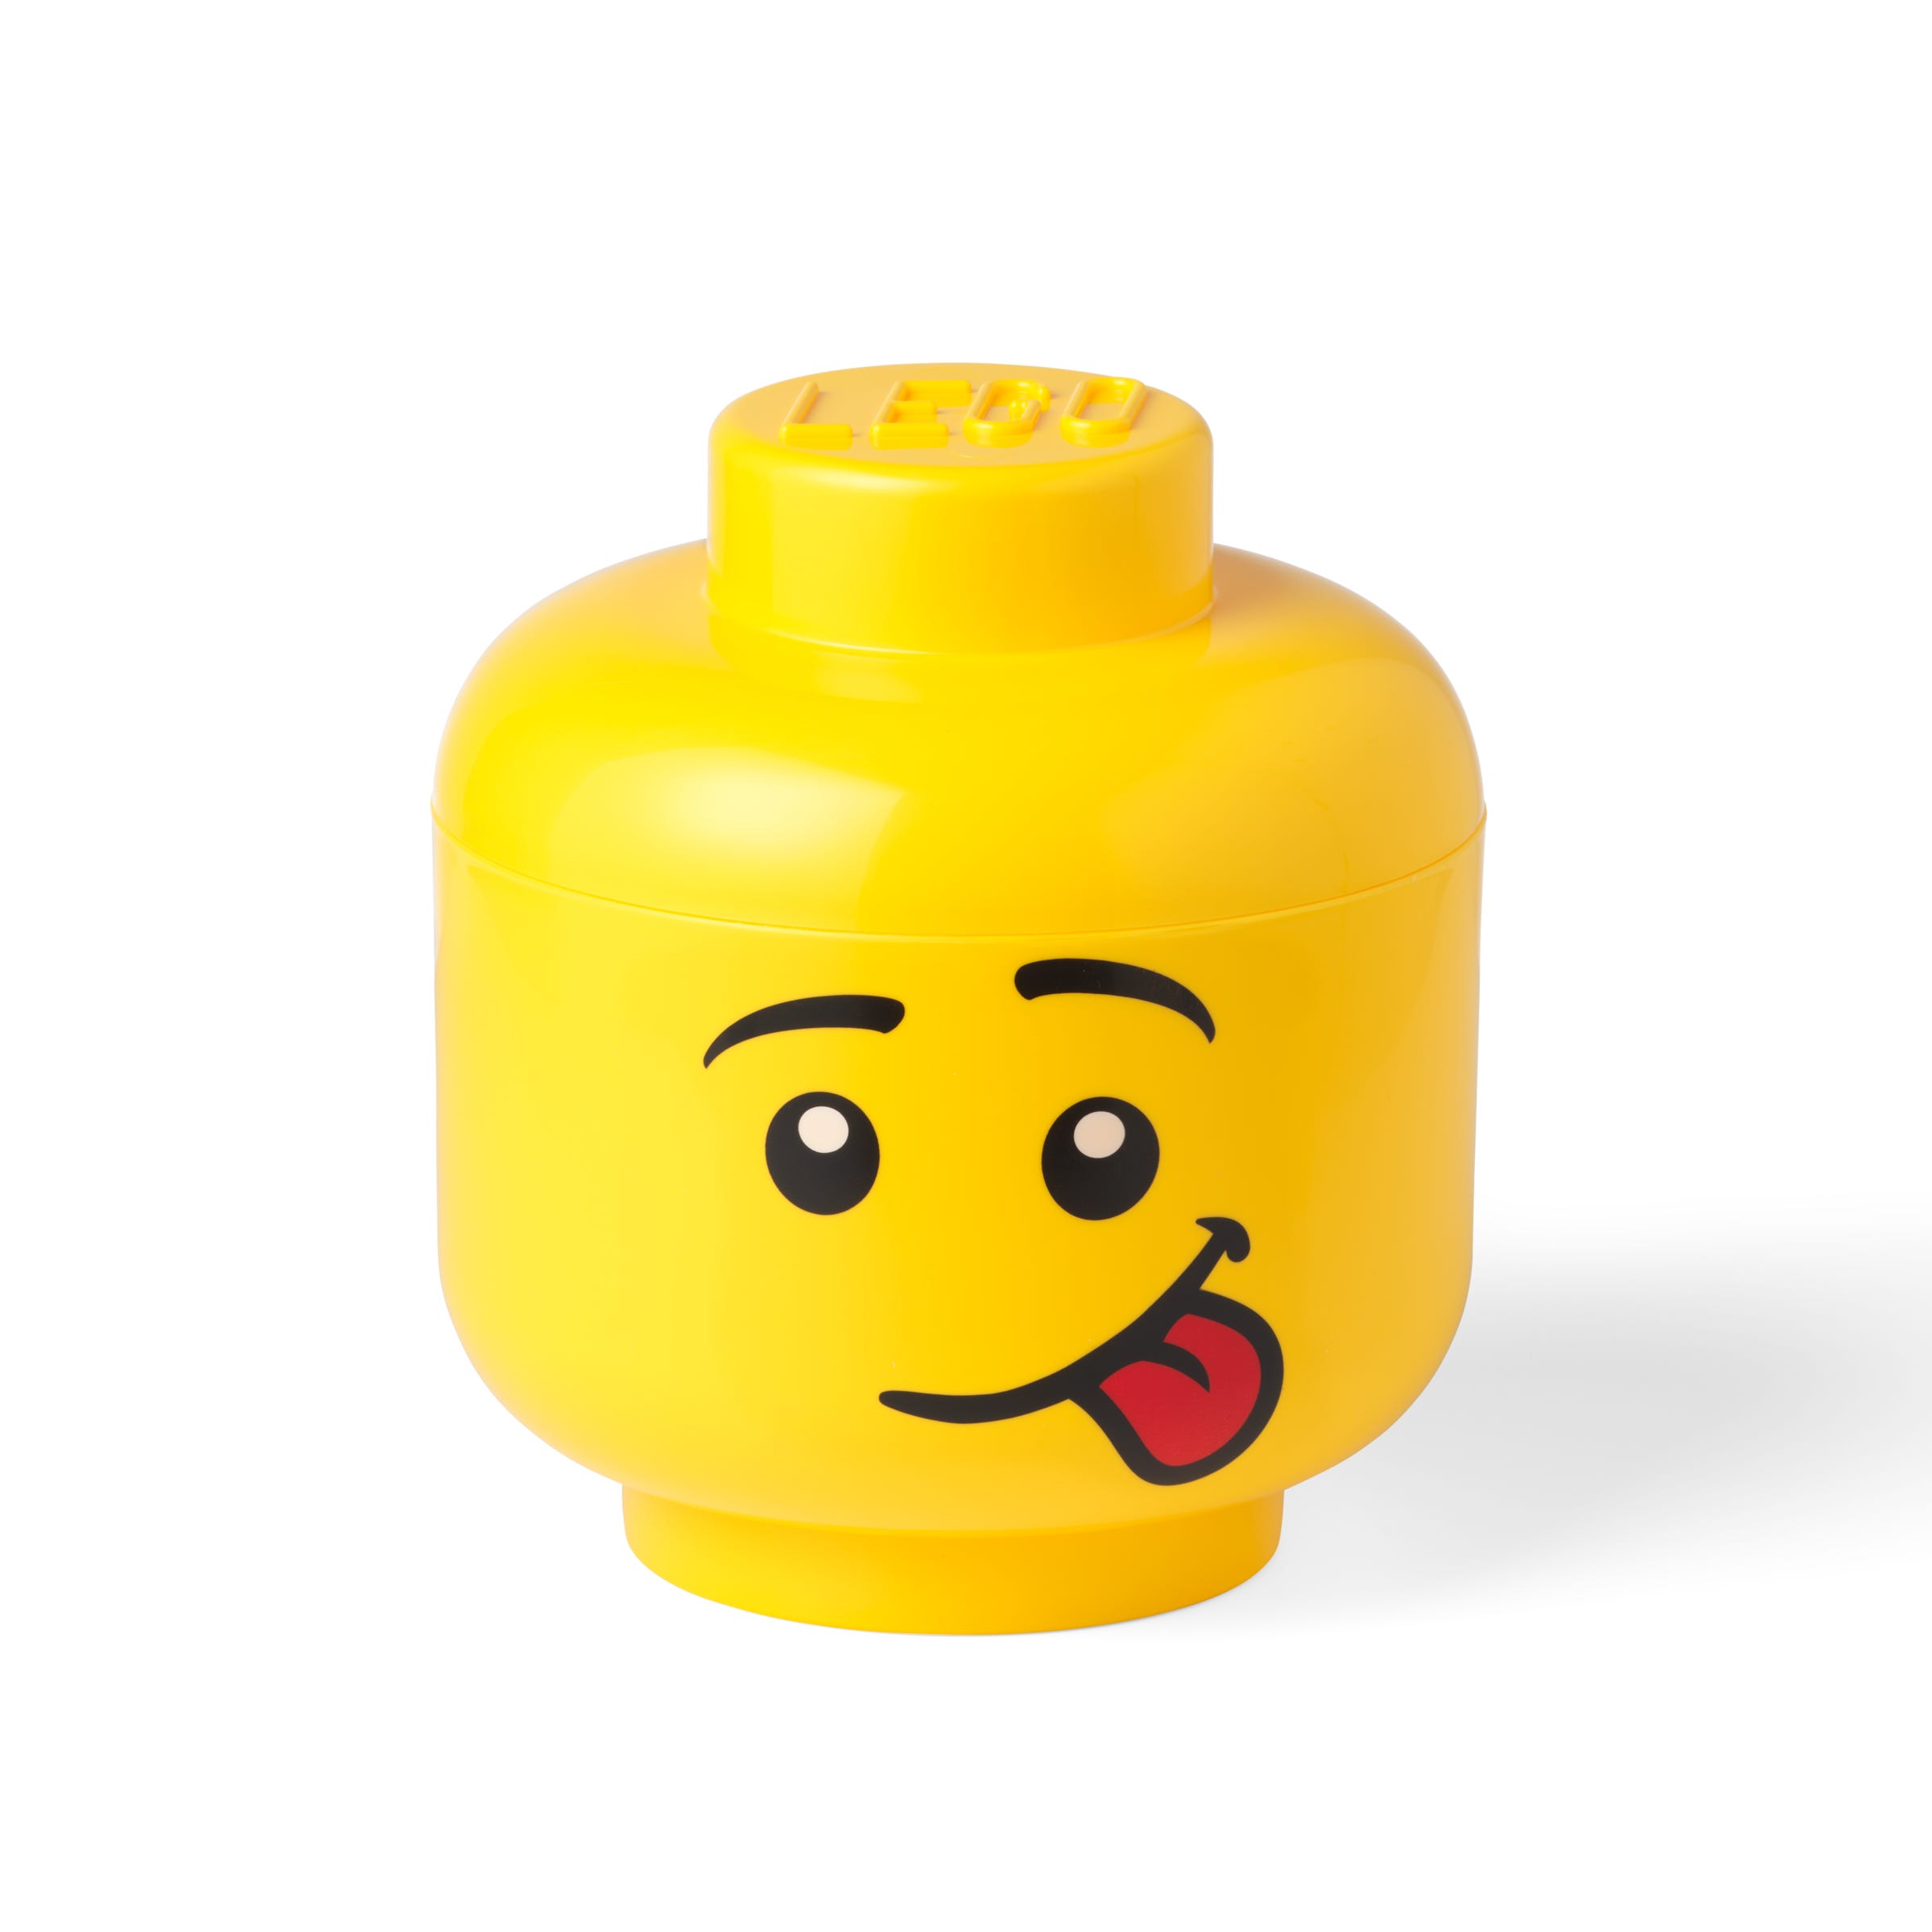 Zdjęcia - Akcesoria do produktów dla dzieci Lego Duży pojemnik w kształcie głowy śmiesznej minifigurki 